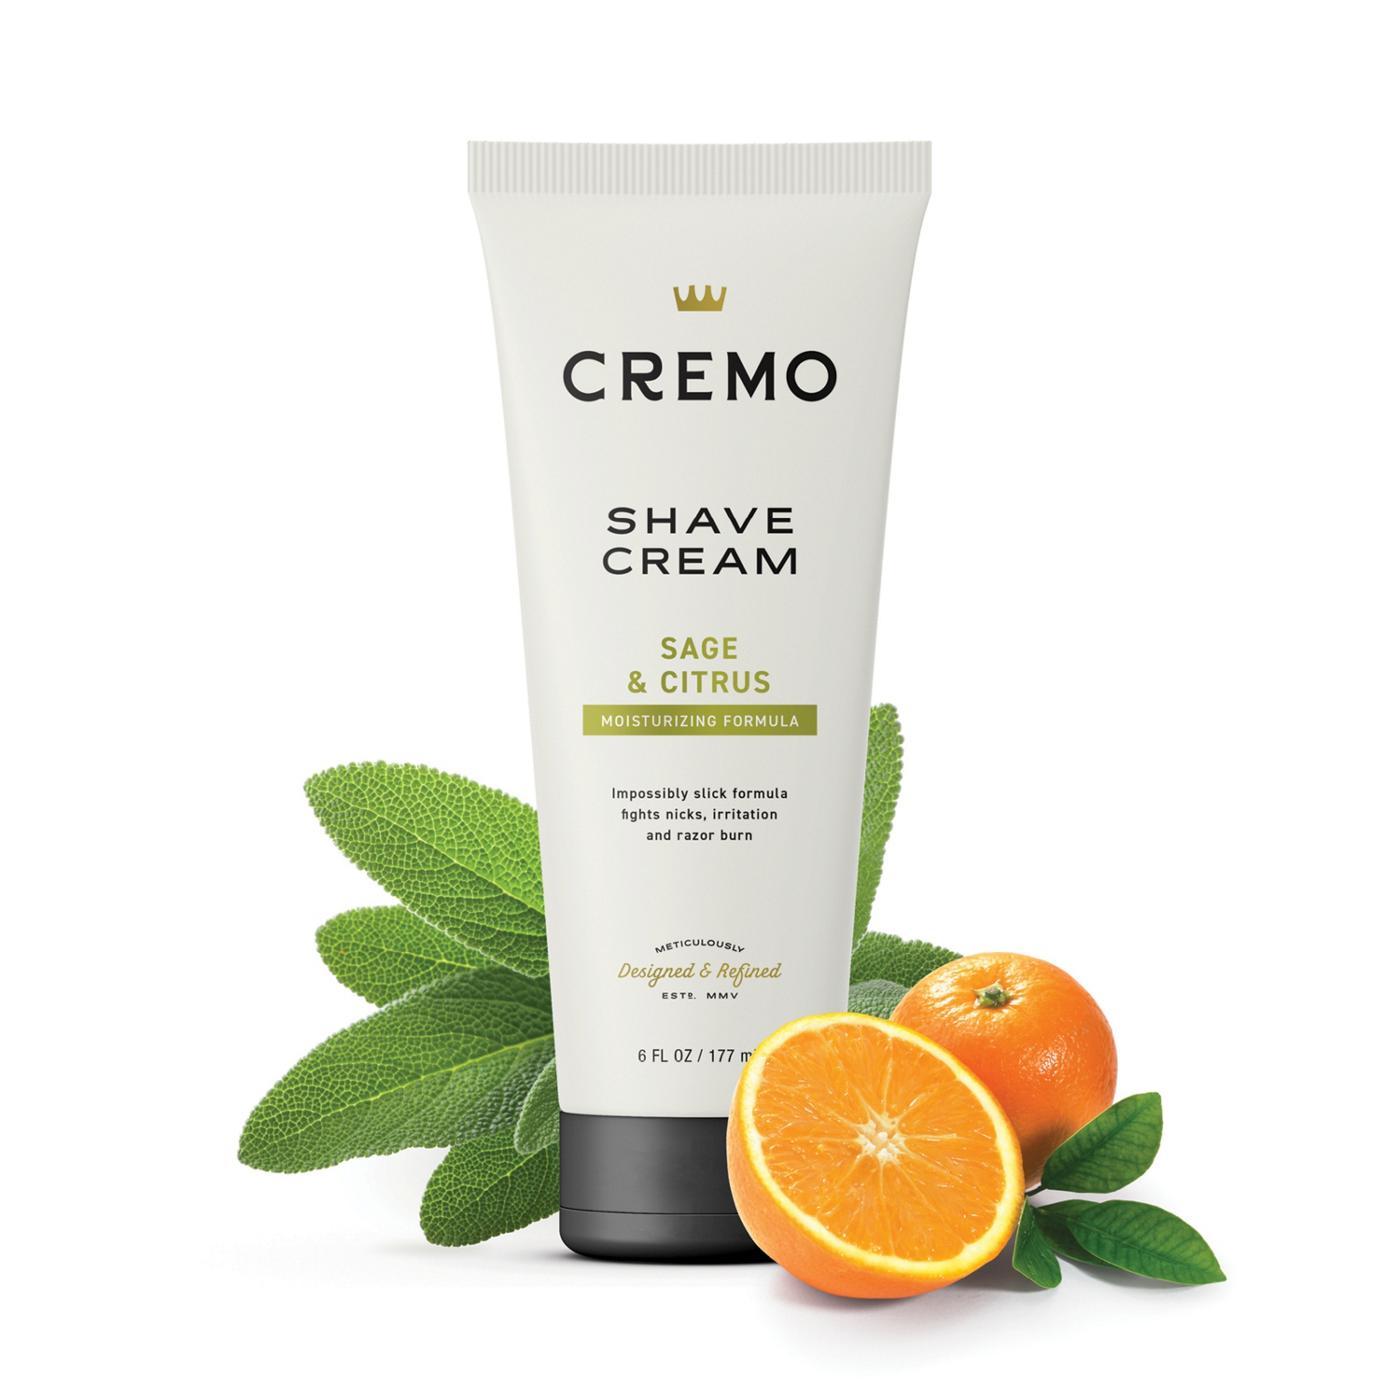 Cremo Shave Cream - Sage & Citrus; image 4 of 7